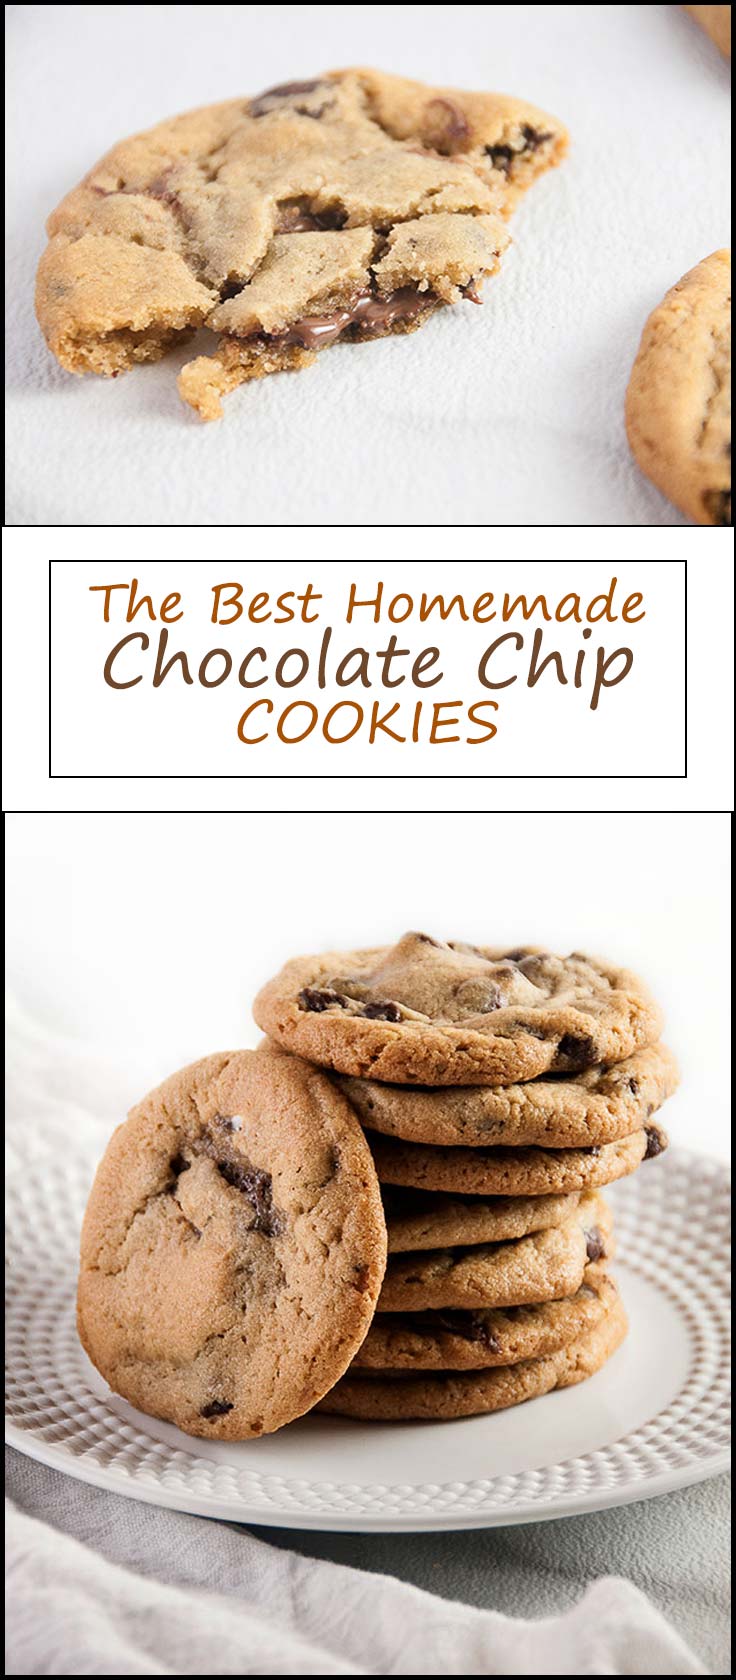 The Best Chocolate Chip Cookies from www.seasonedsprinkles.com